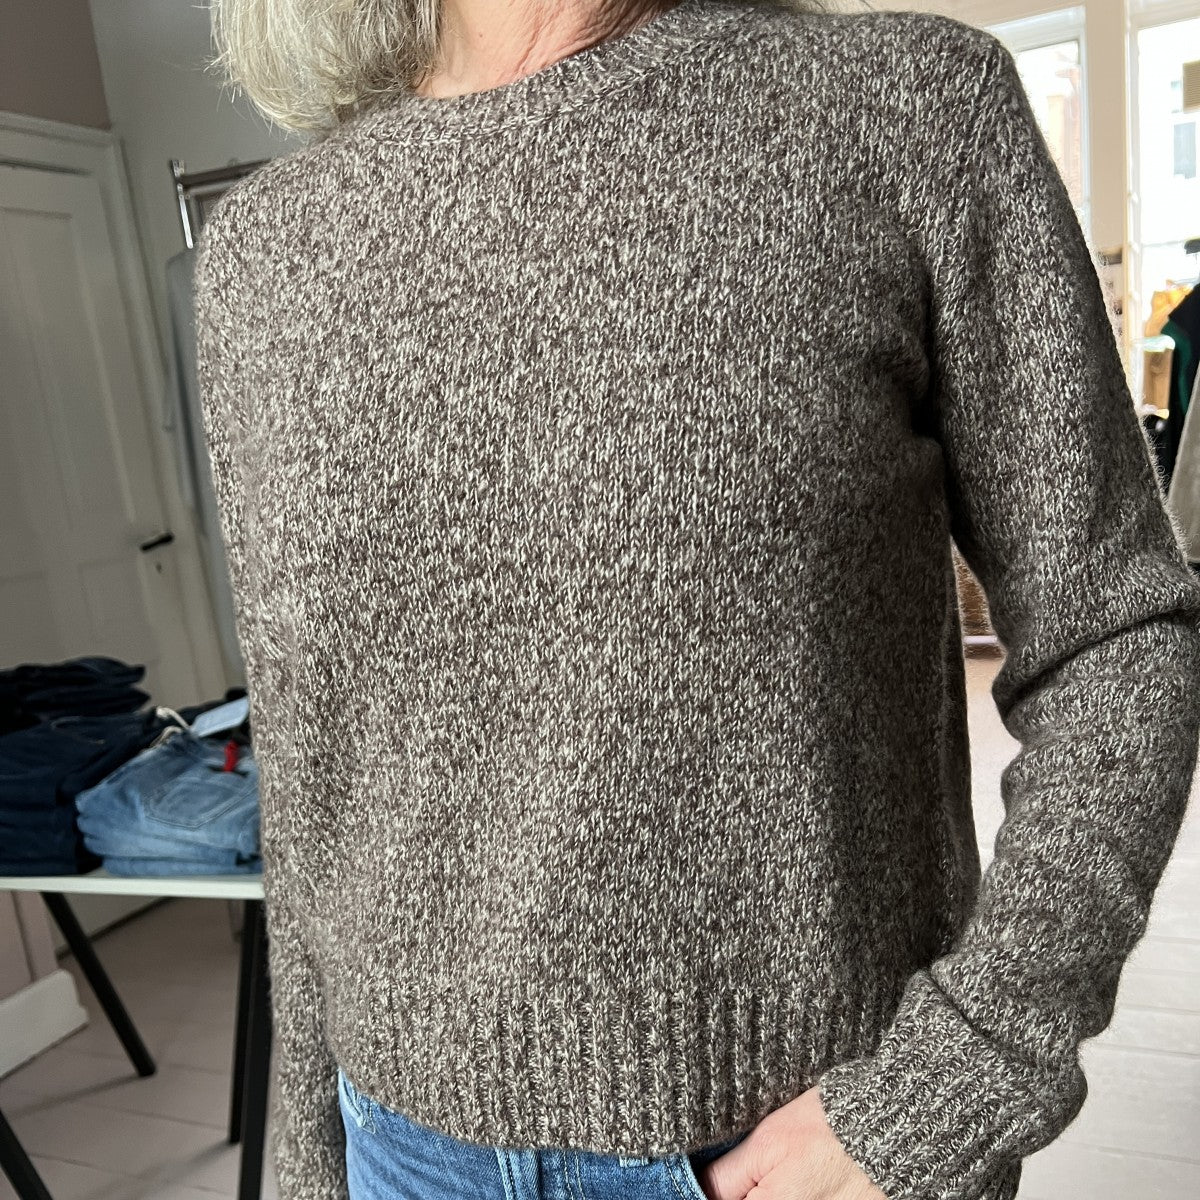 Lisa Yang Mira sweater soft wood